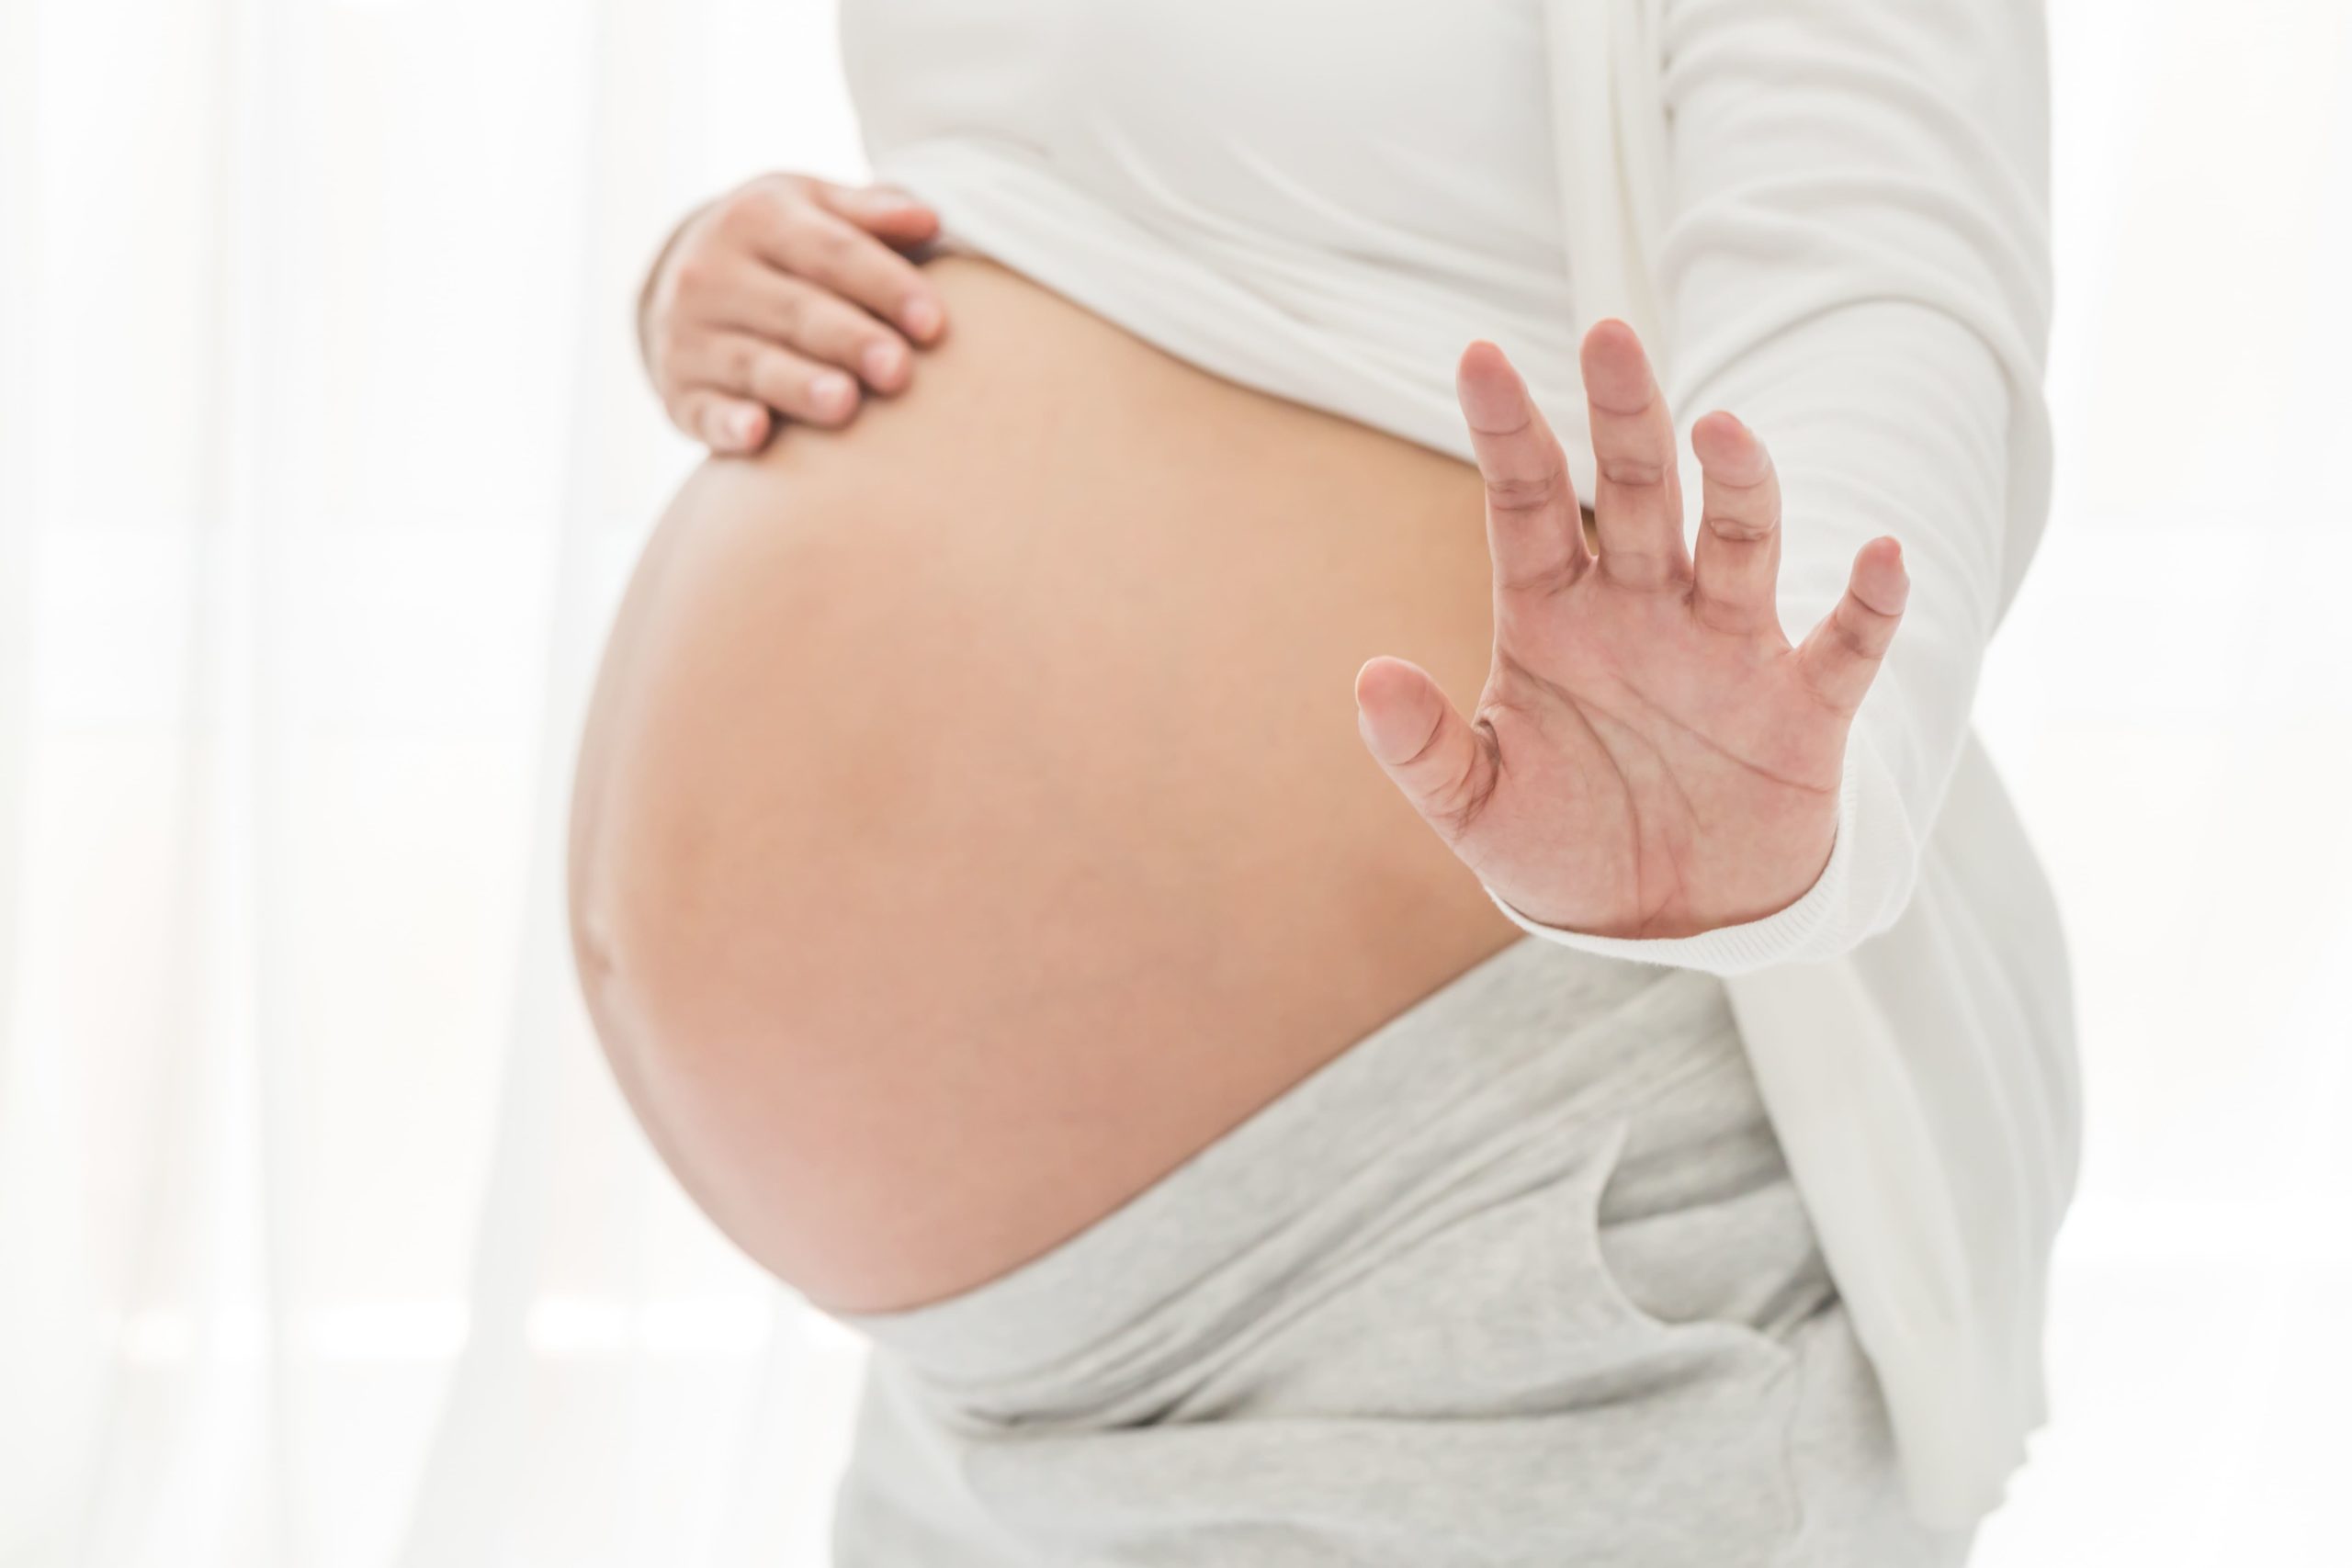 Femme enceinte, l'usage de drogues pendant la grossesse 